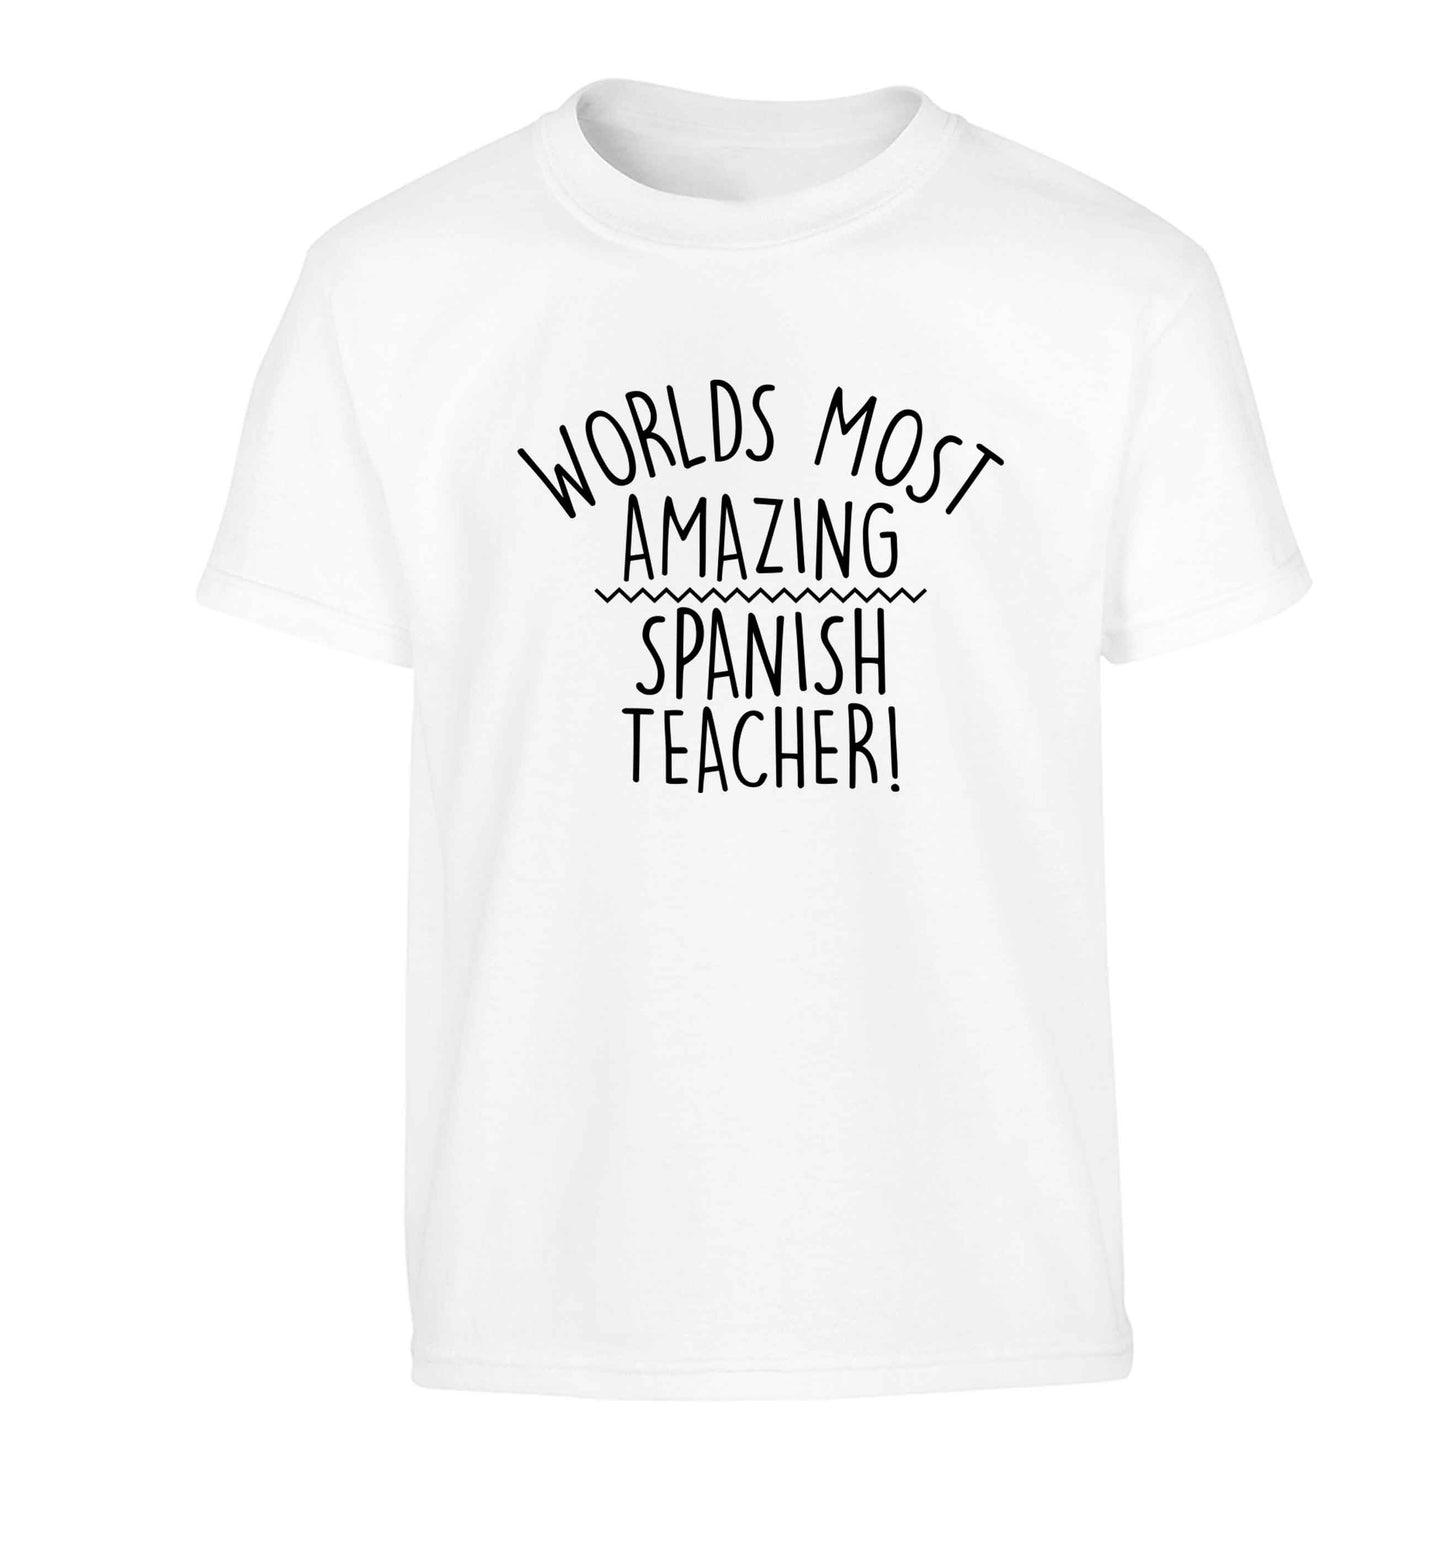 Worlds most amazing Spanish teacher Children's white Tshirt 12-13 Years